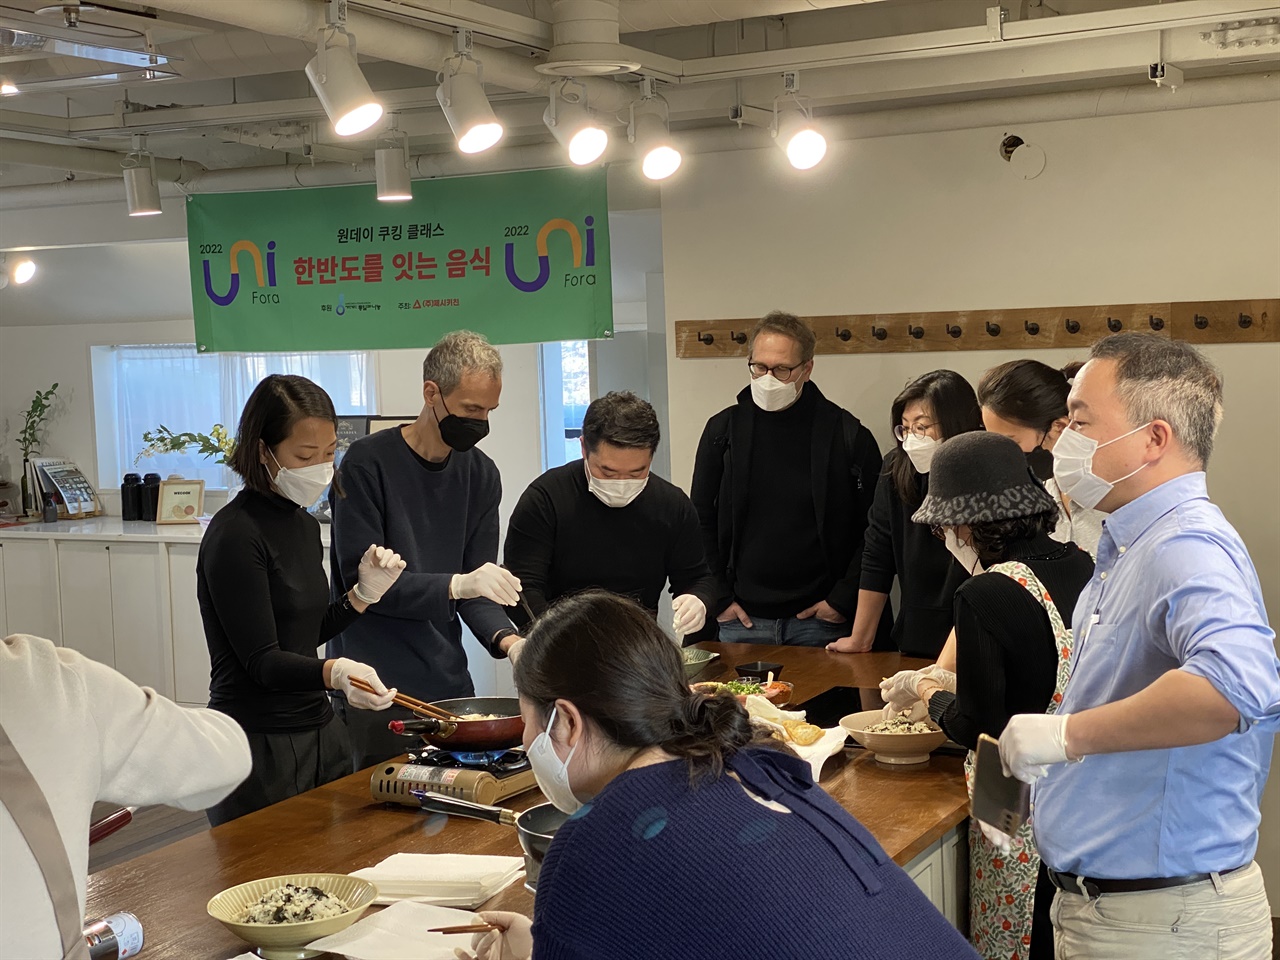 두부밥 요리실습 참가자들이 팀을 이뤄 실습하고 있다.